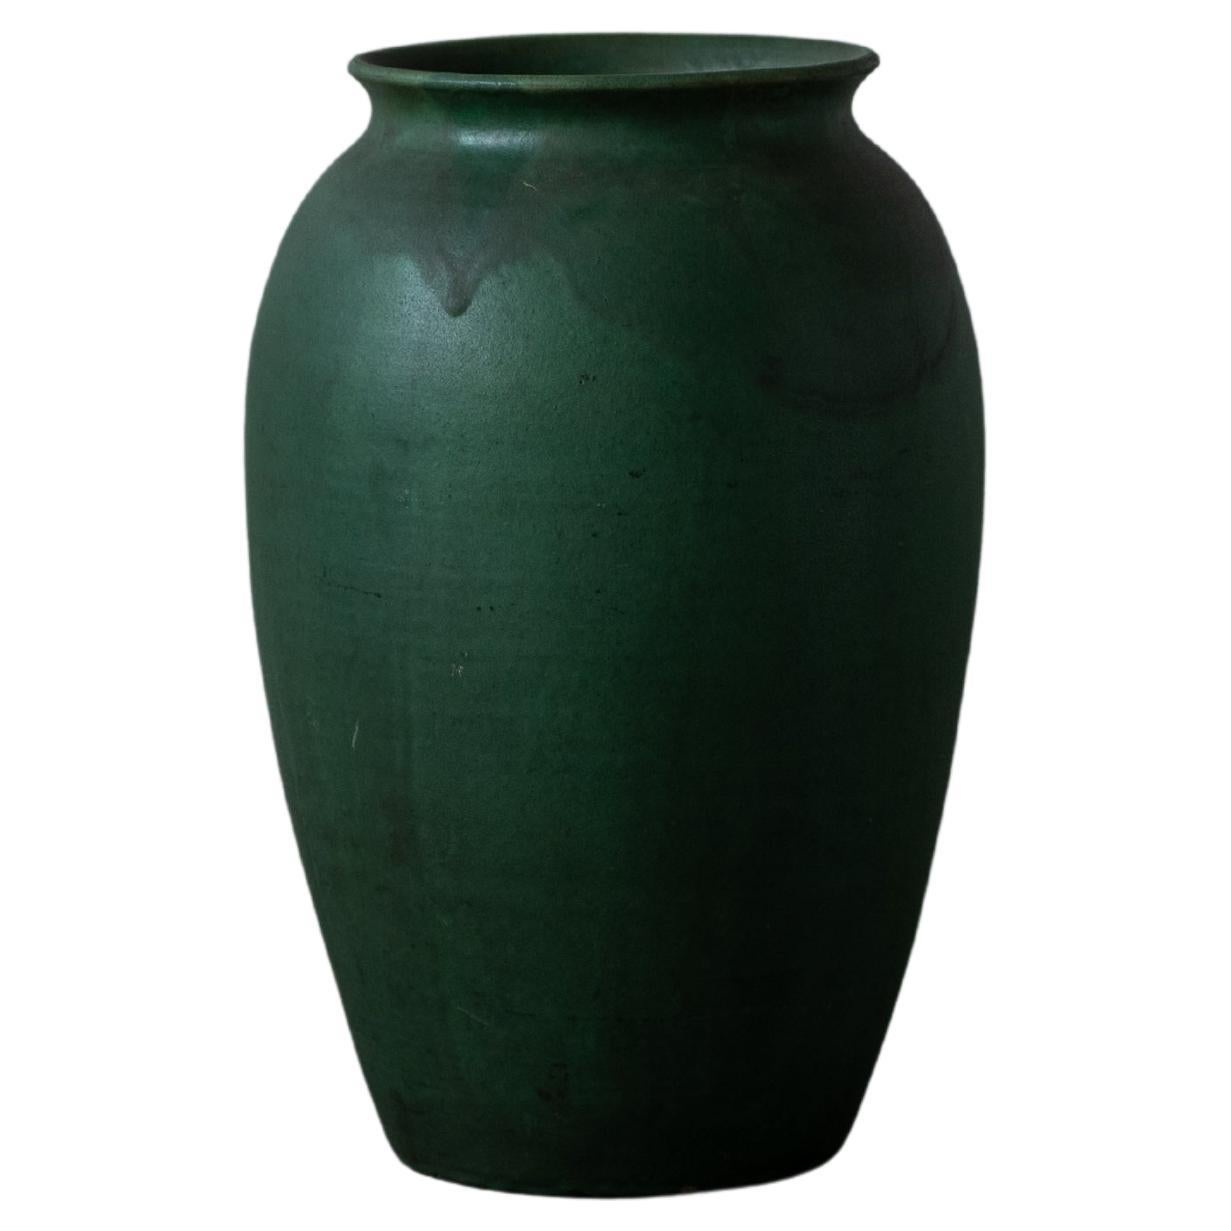 Herman Kähler, Large Vase, Green Glazed Earthenware, Denmark, C. 1900